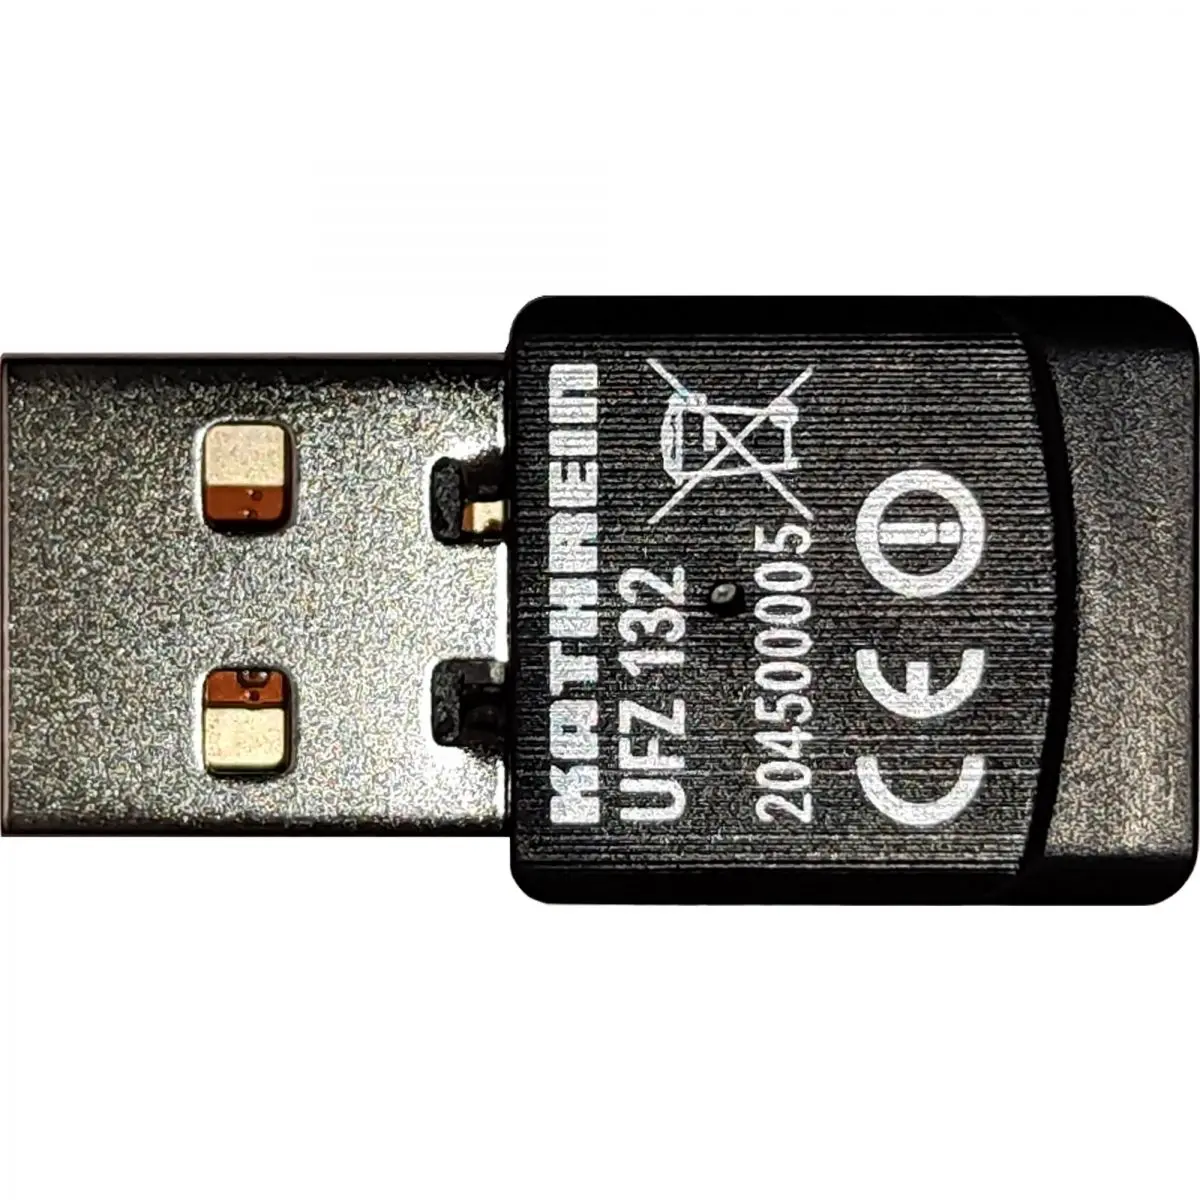 UFZ 132 WLAN USB adaptér pre satelitné systémy CAP a CTS